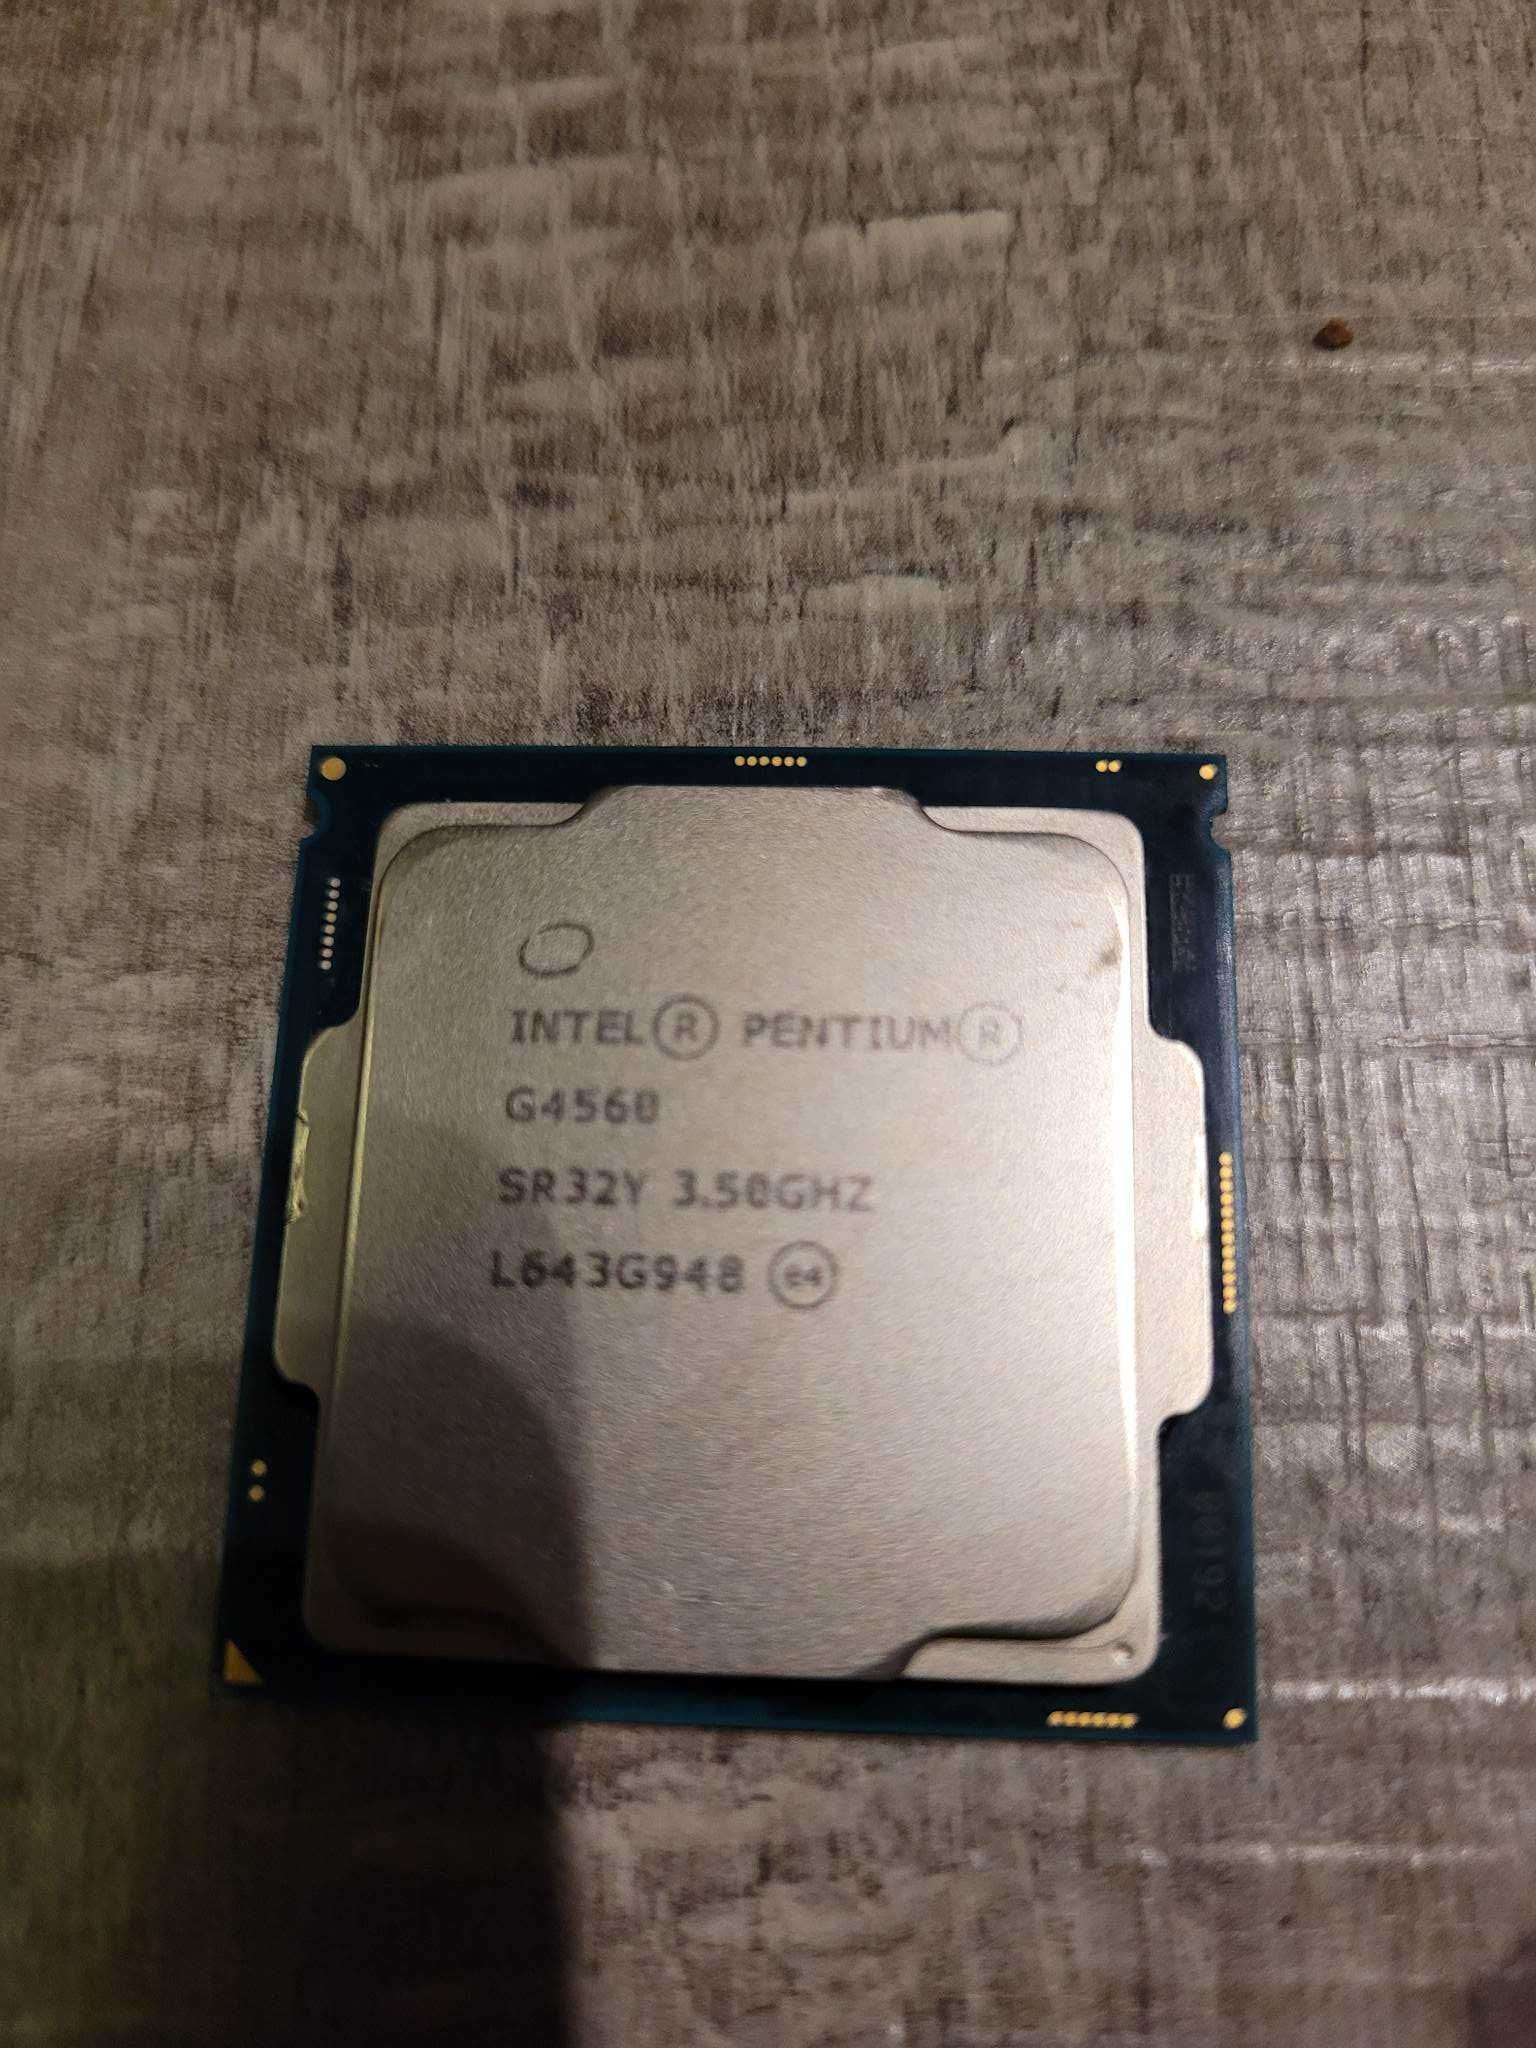 Procesor Intel Pentium G4560 3.5GHz + chłodzenie